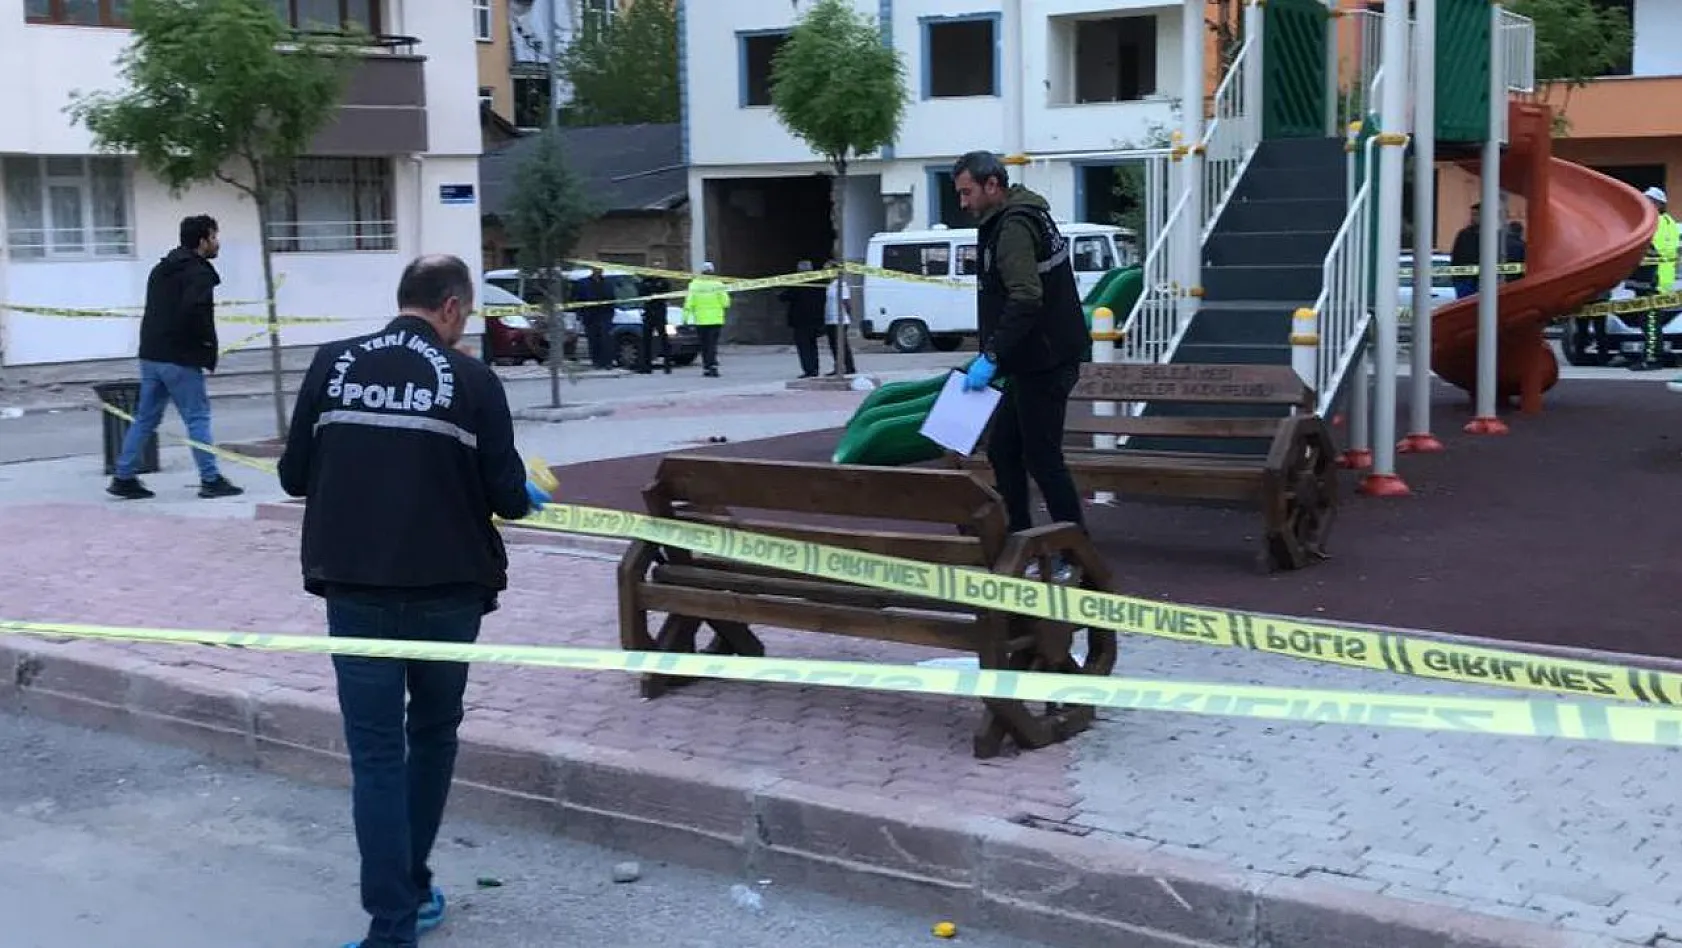 Elazığ'daki Silahlı Saldırıda 3 Tutuklama